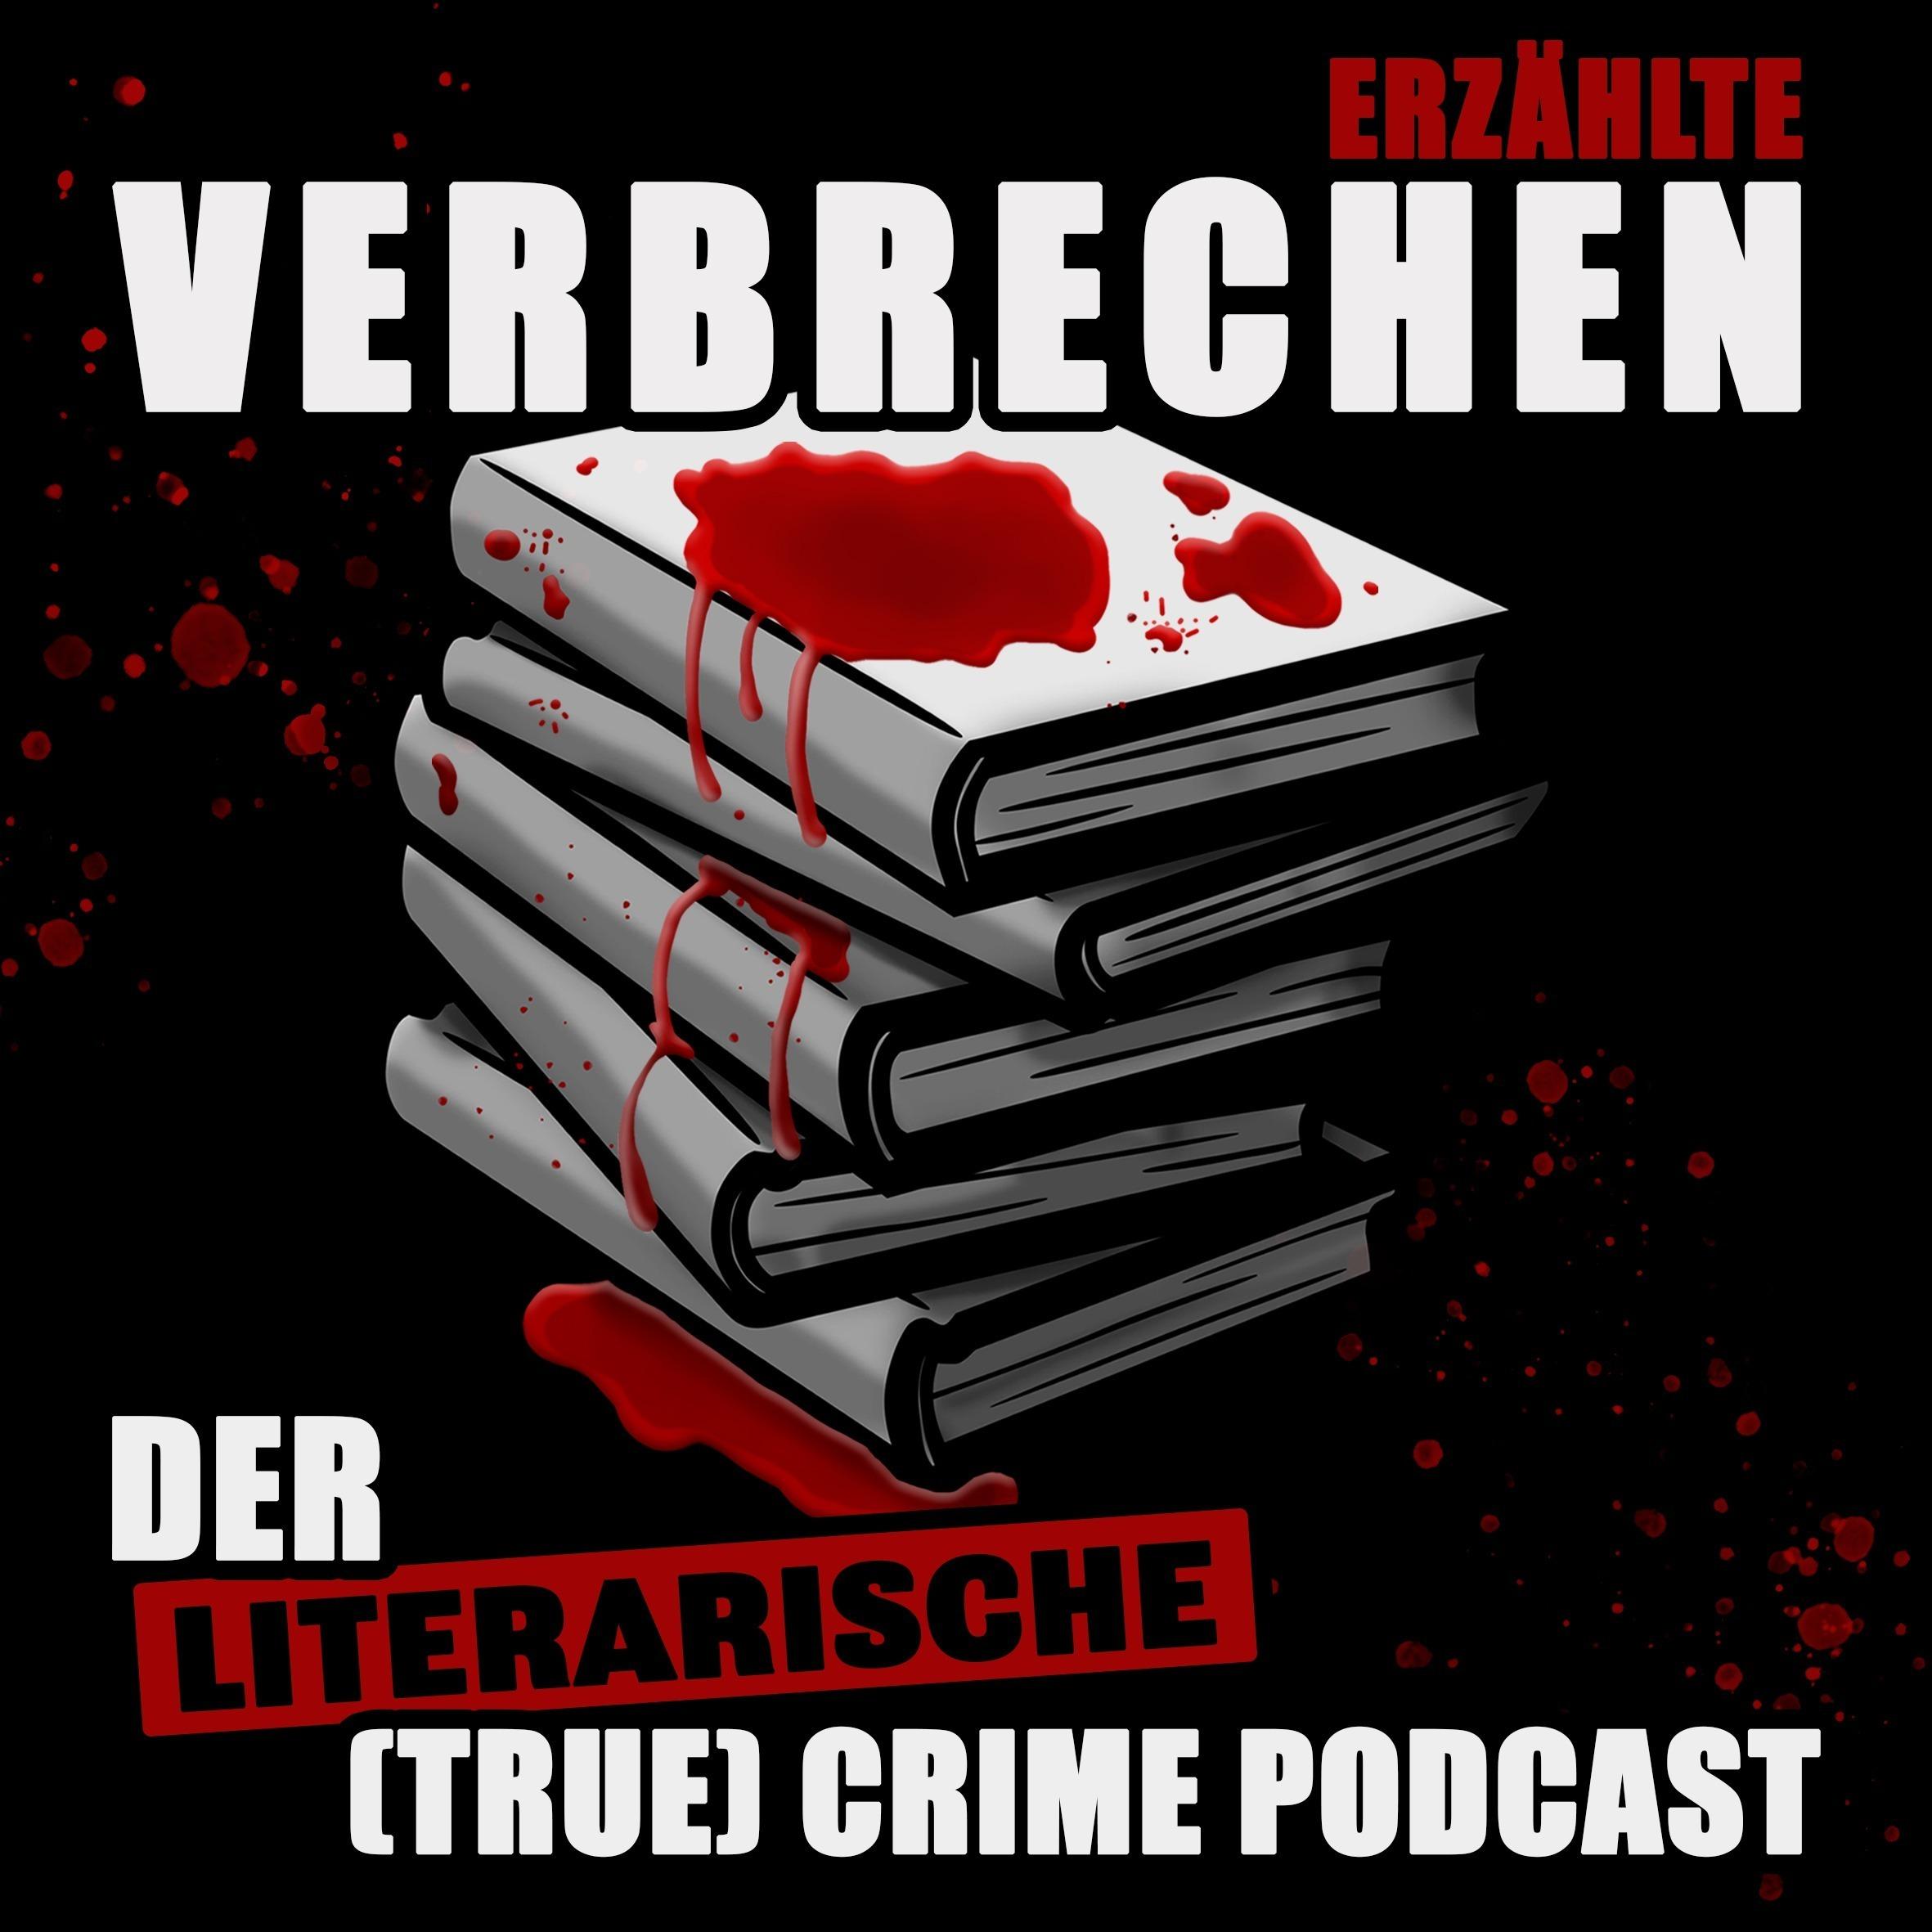 ERZÄHLTE VERBRECHEN - Der literarische (True) Crime Podcast